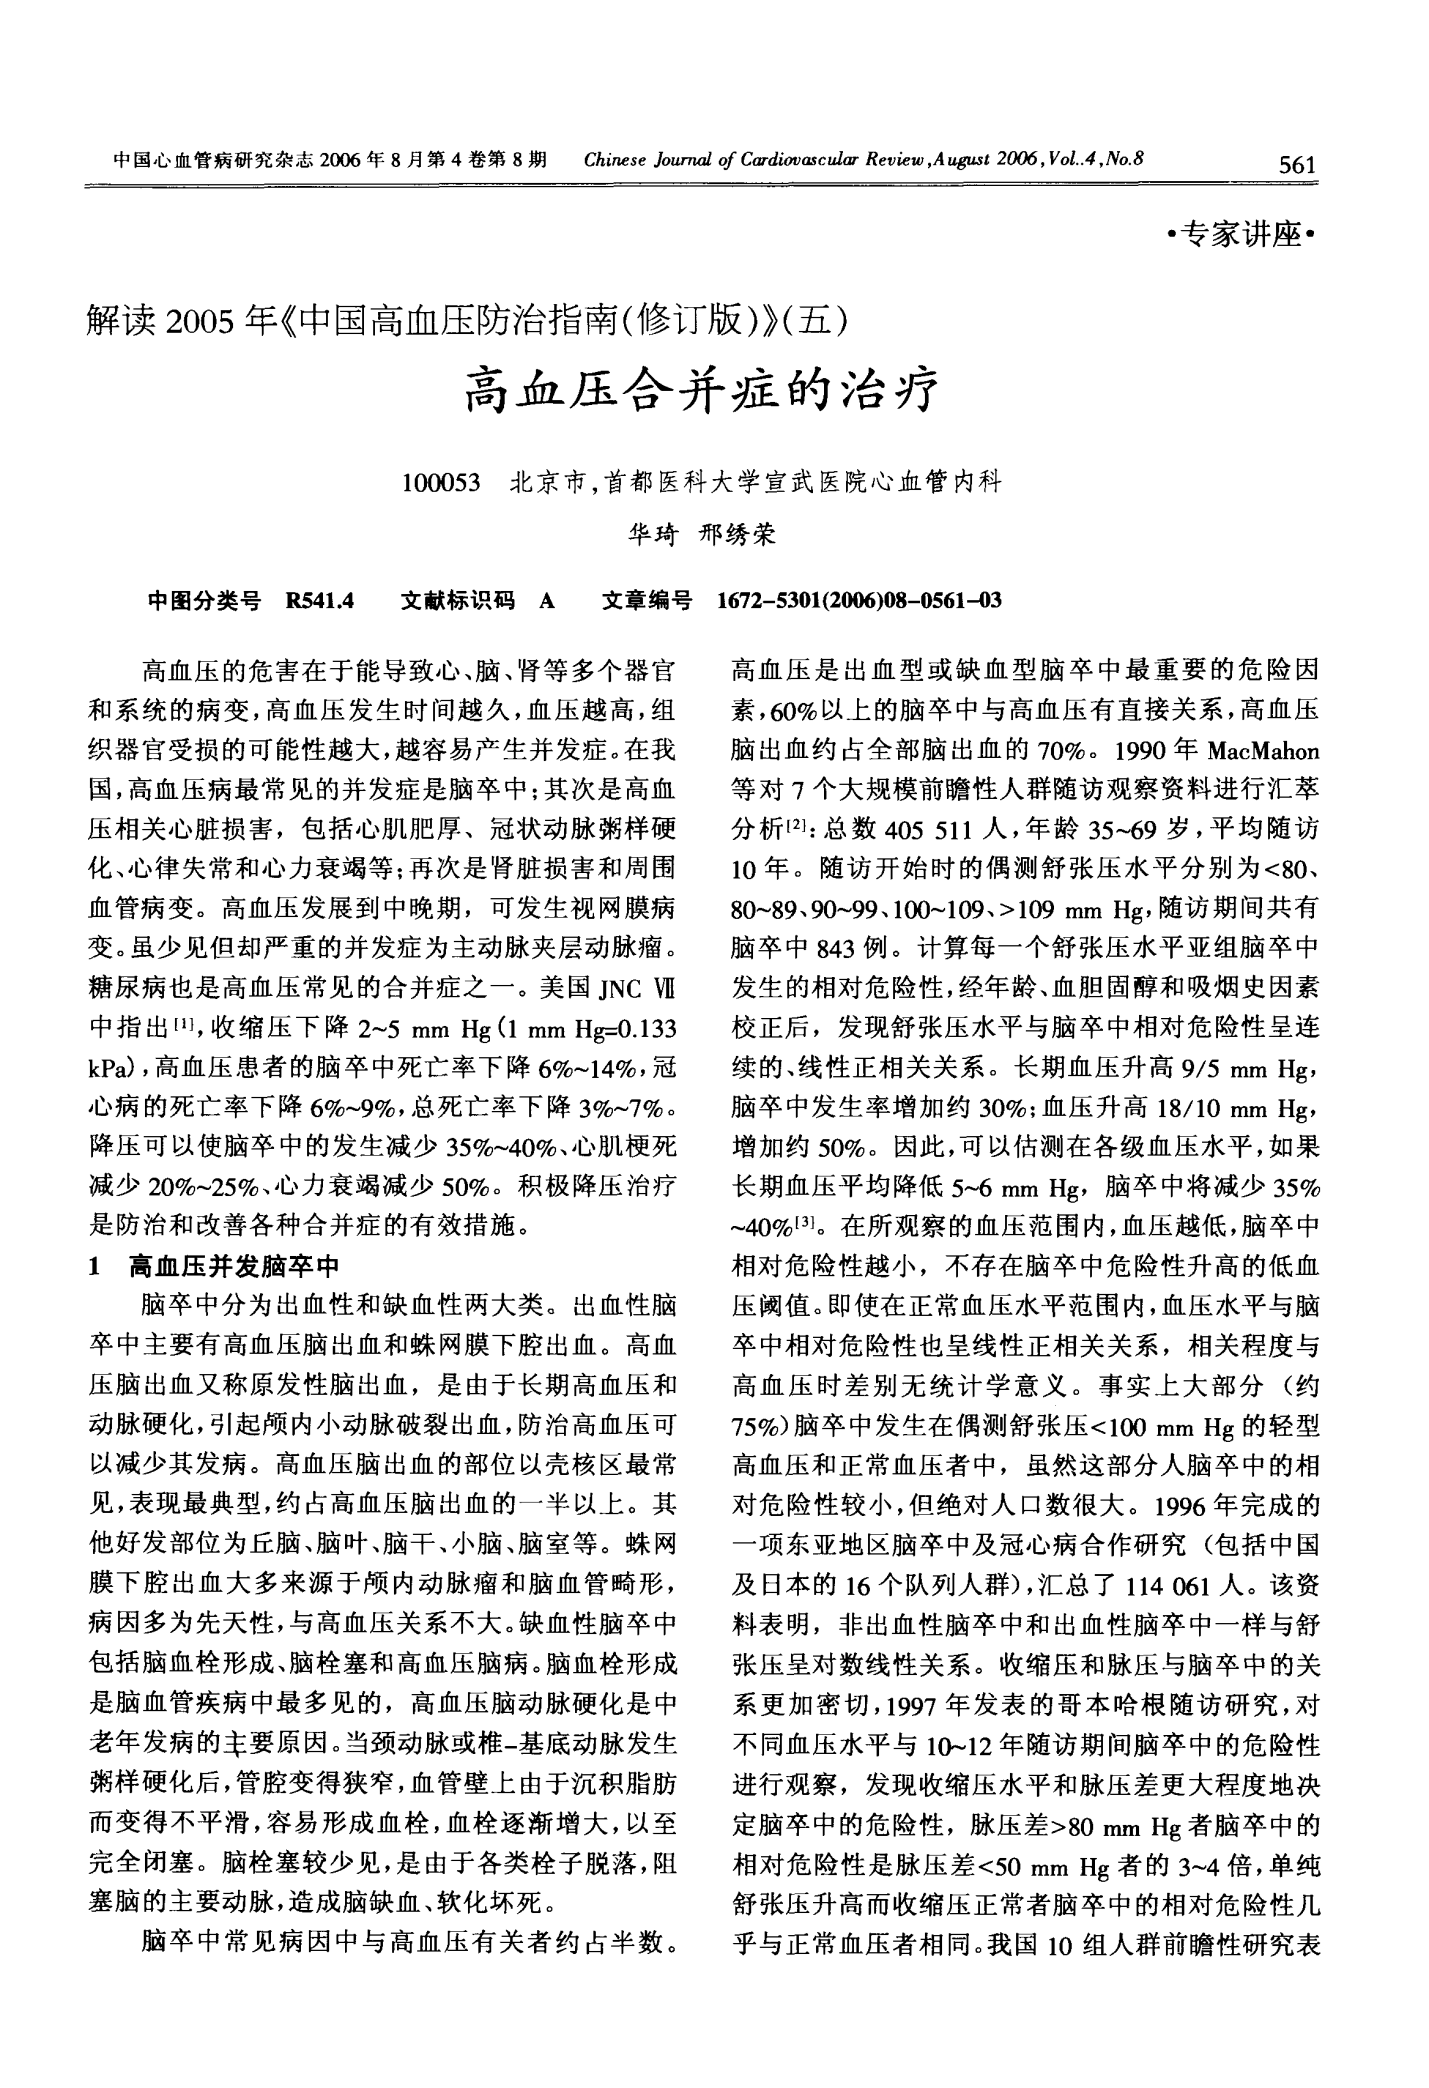 解读2005年《中国高血压防治指南(修订版)》(五)高血压合并症的治疗